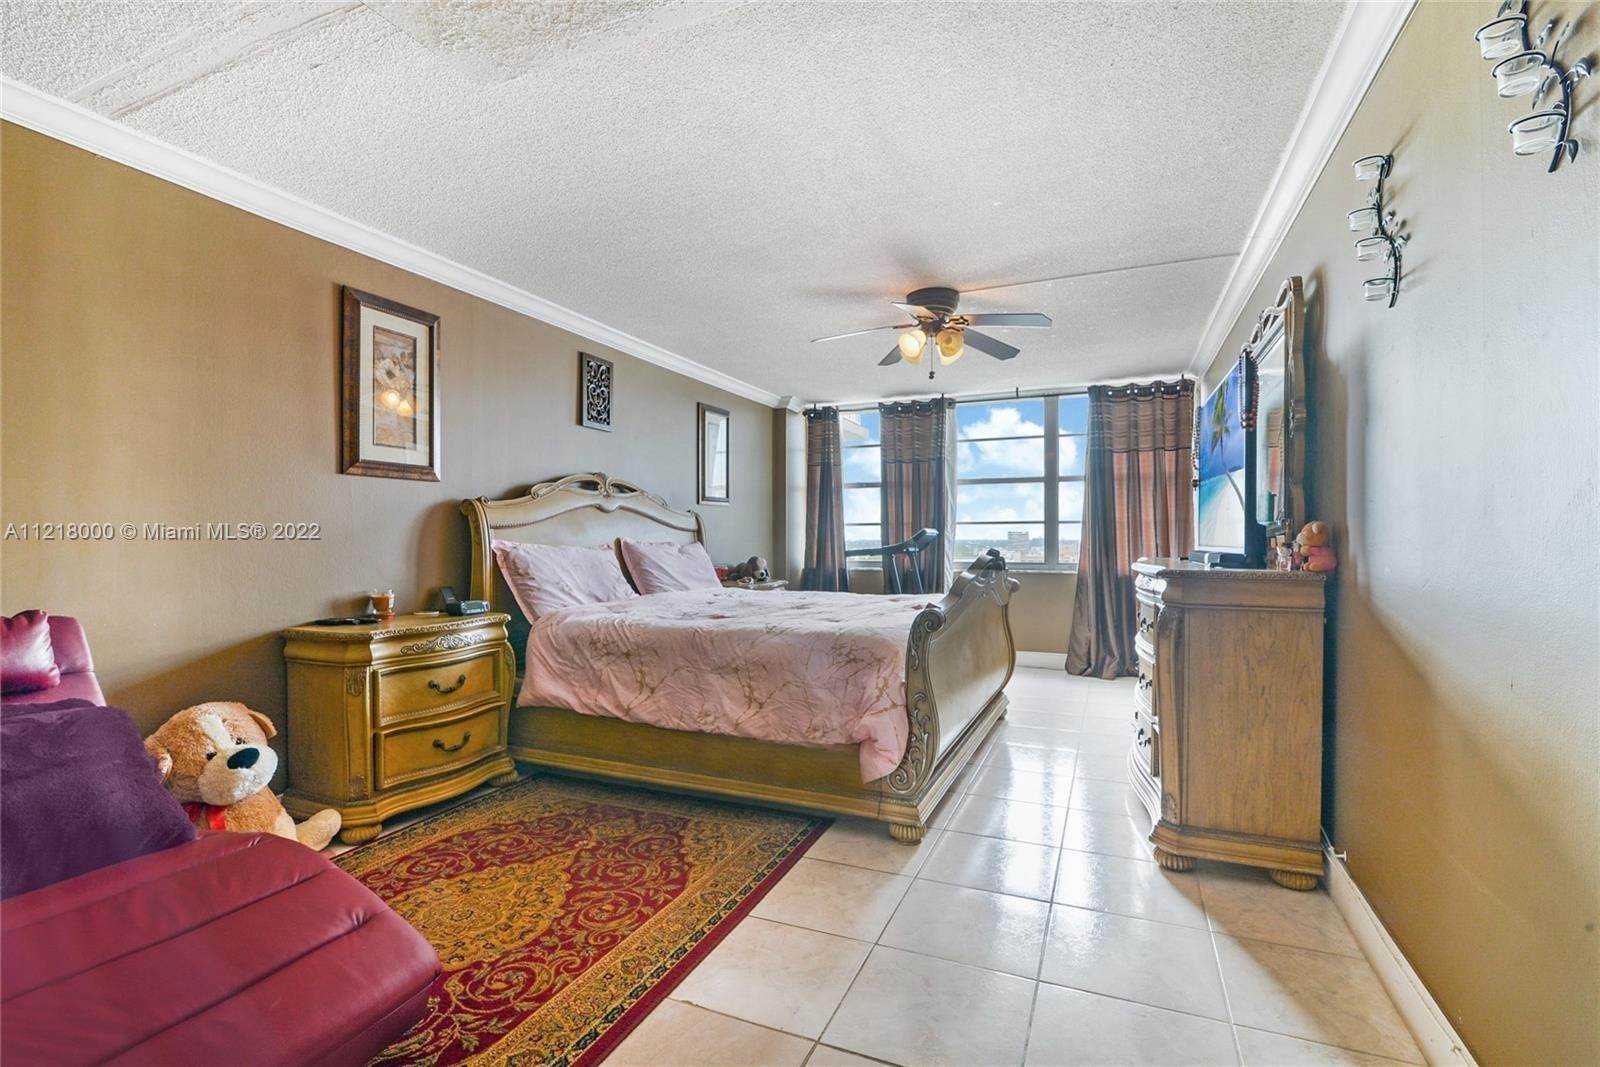 3. Condominium for Sale at Aventura, FL 33160